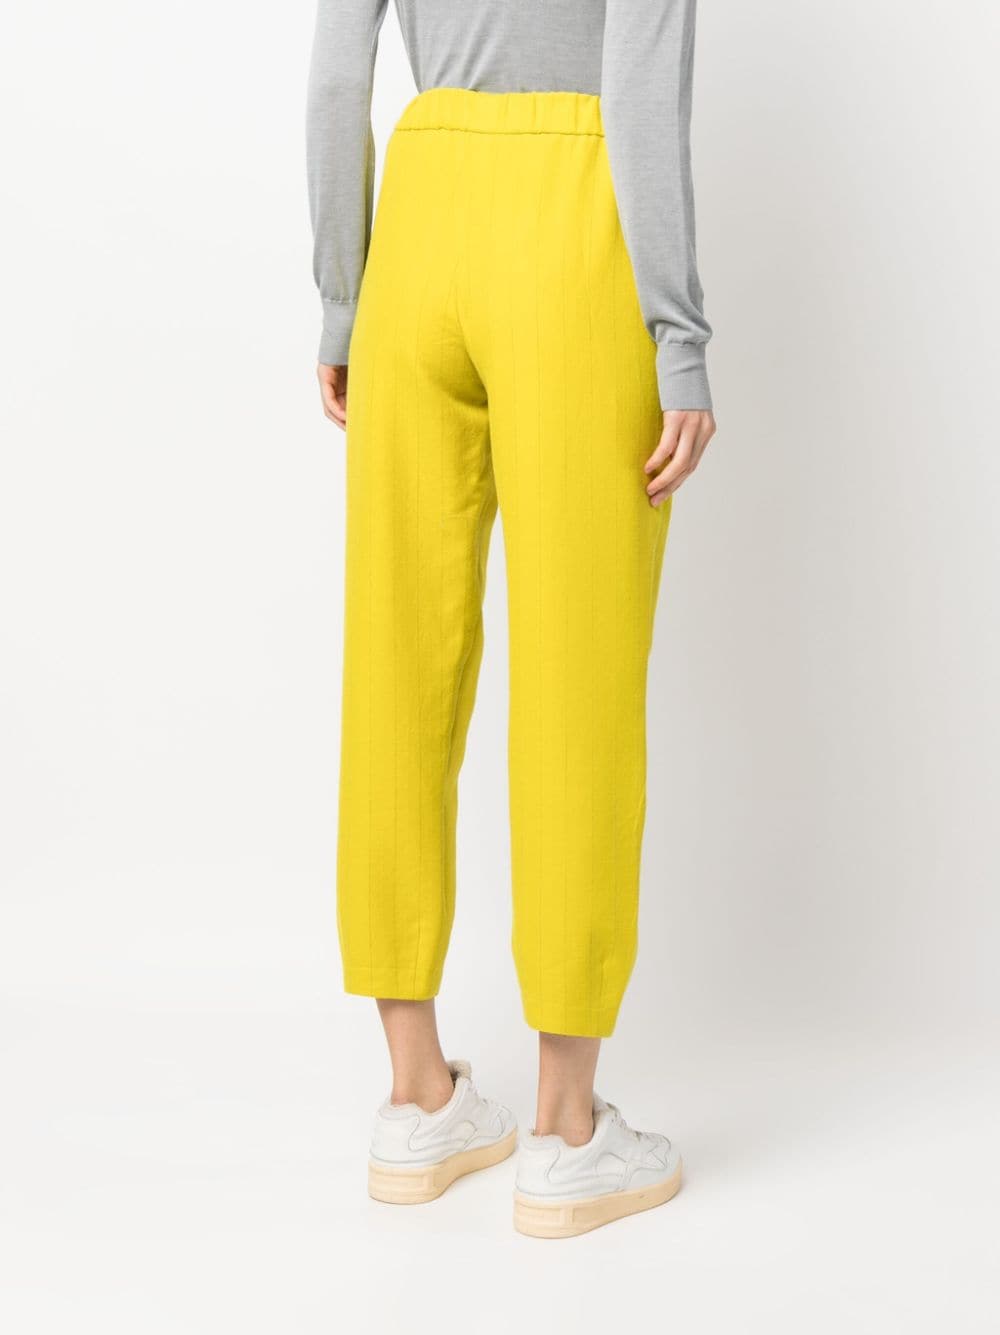 Pantaloni giallo donna